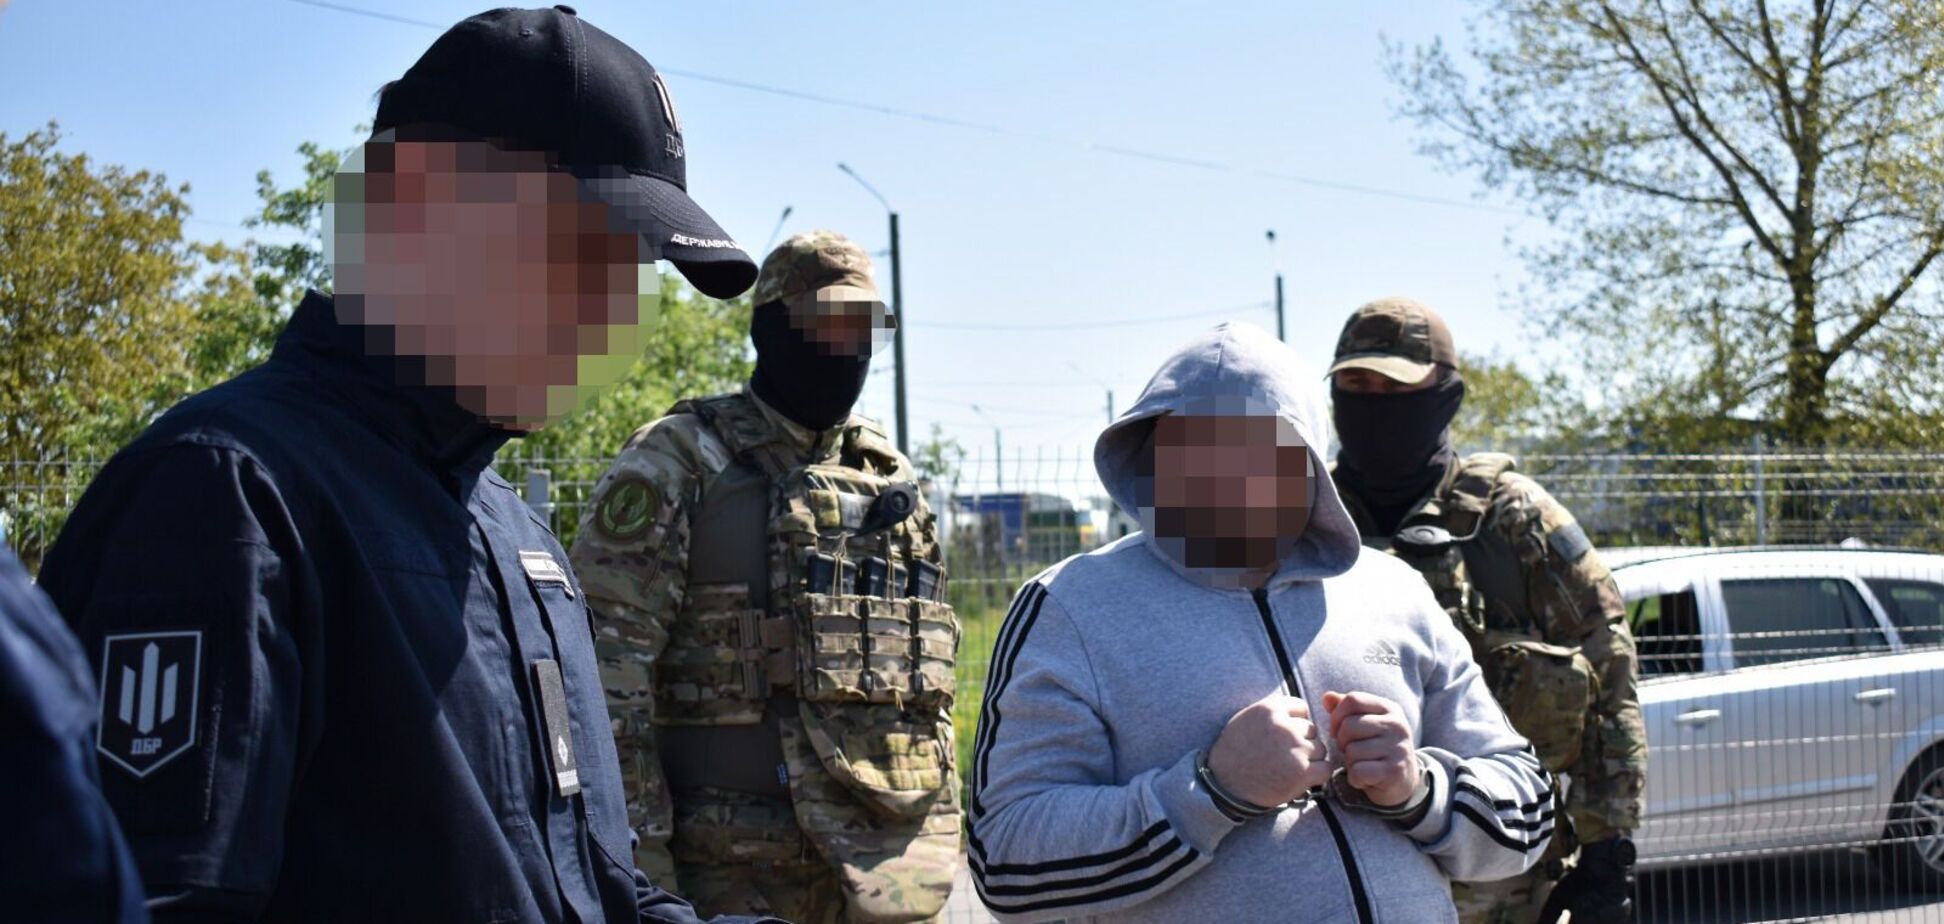 Румунія передала Україні організатора міжнародного наркосиндикату. Фото і відео
